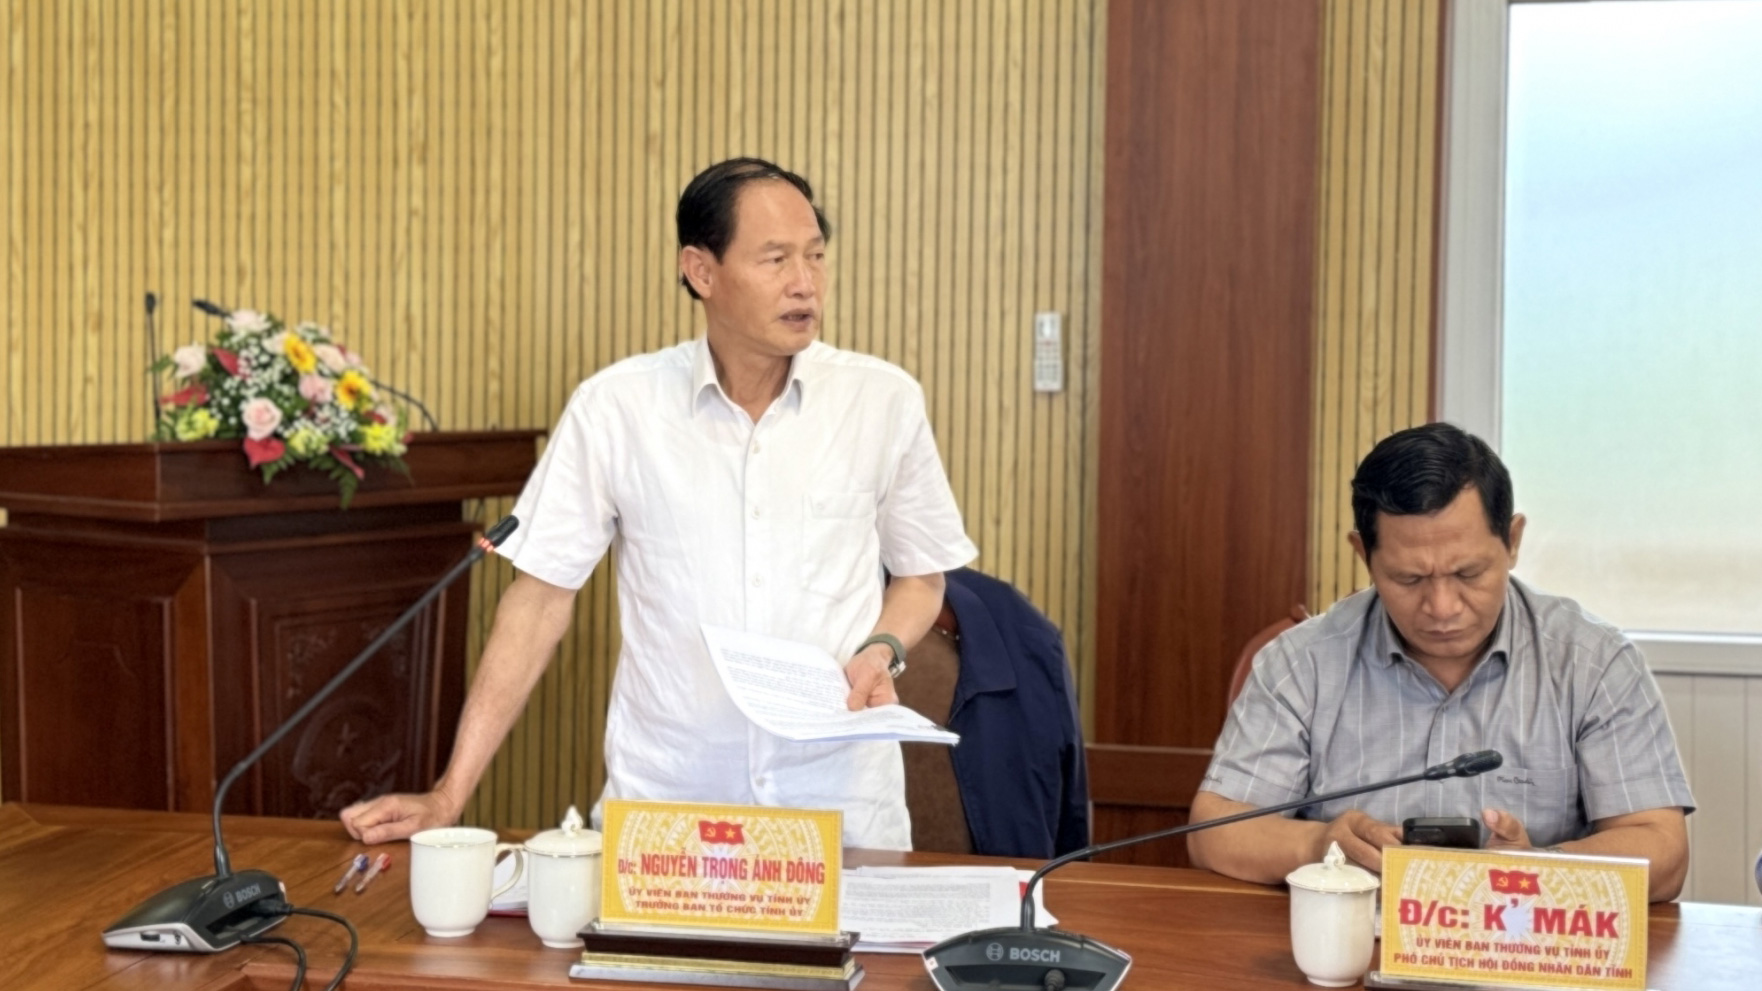 Đồng chí Nguyễn Trọng Ánh Đông -  Trưởng Ban Tổ chức Tỉnh ủy phát biểu tại buổi làm việc